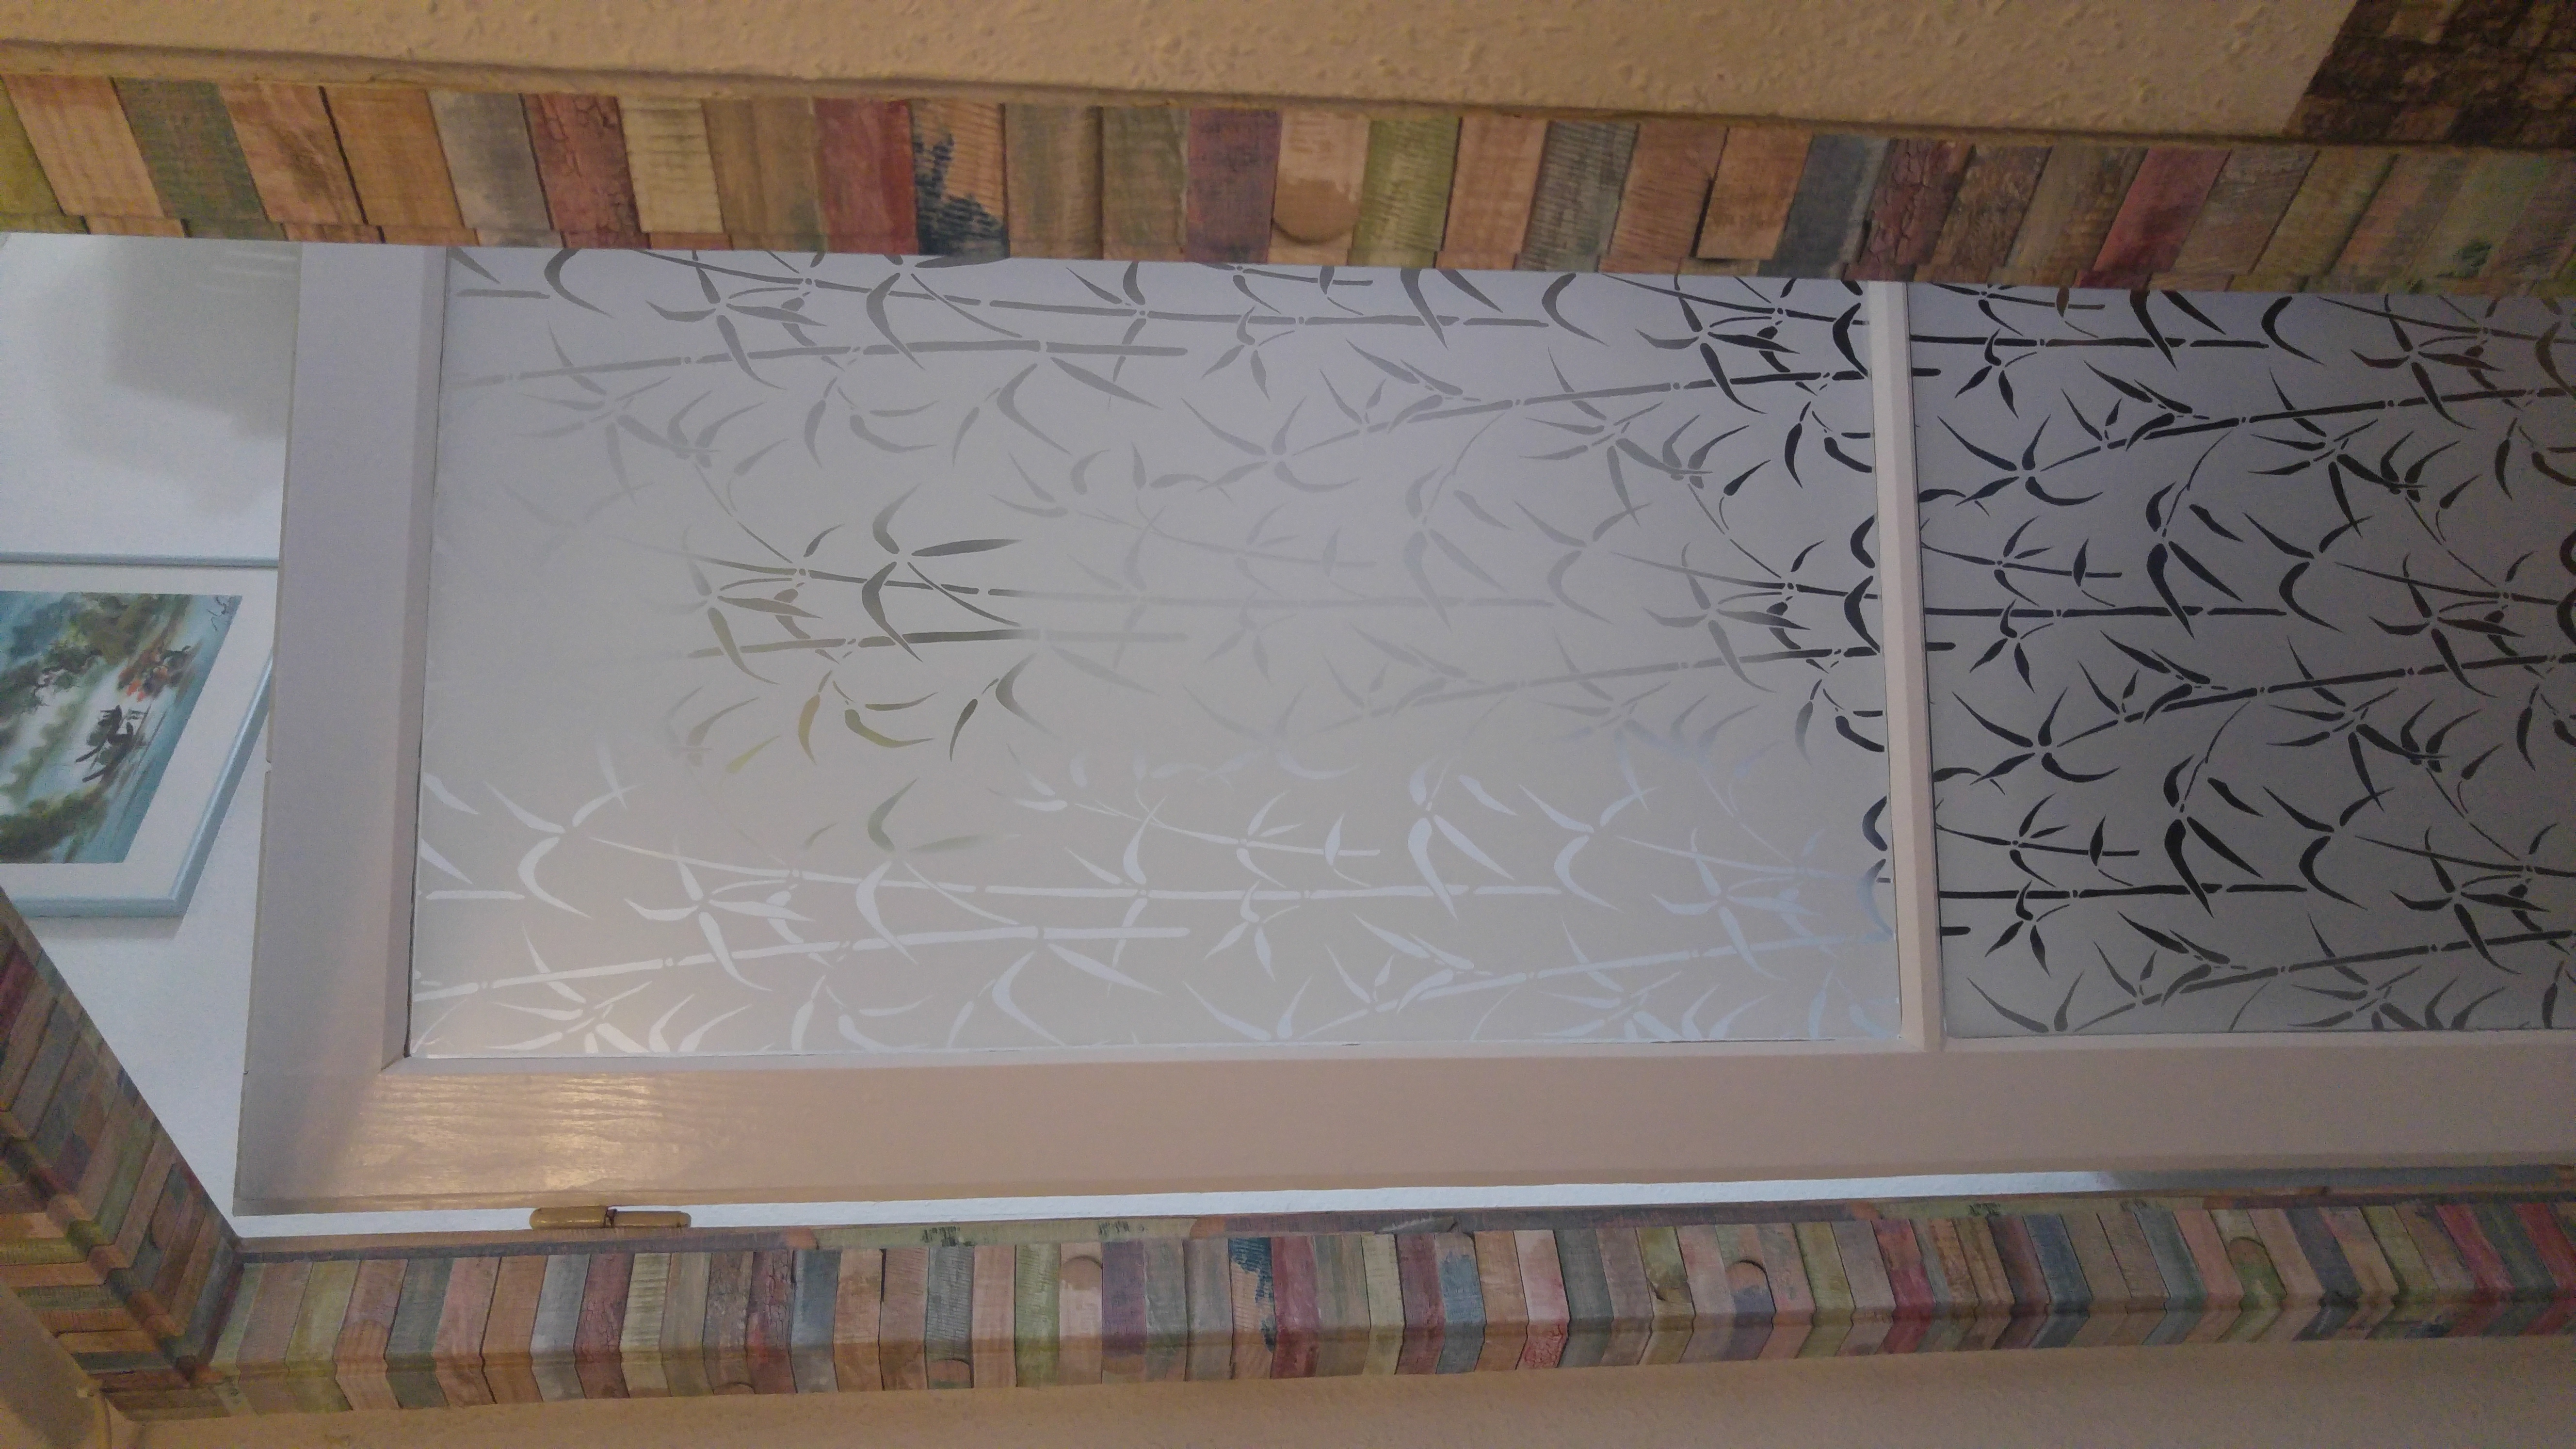   Bambusz Ablak Ragasztó Nélküli Standard Ablakfólia (Bamboo Static) (1,5 m x 67,5 cm)
